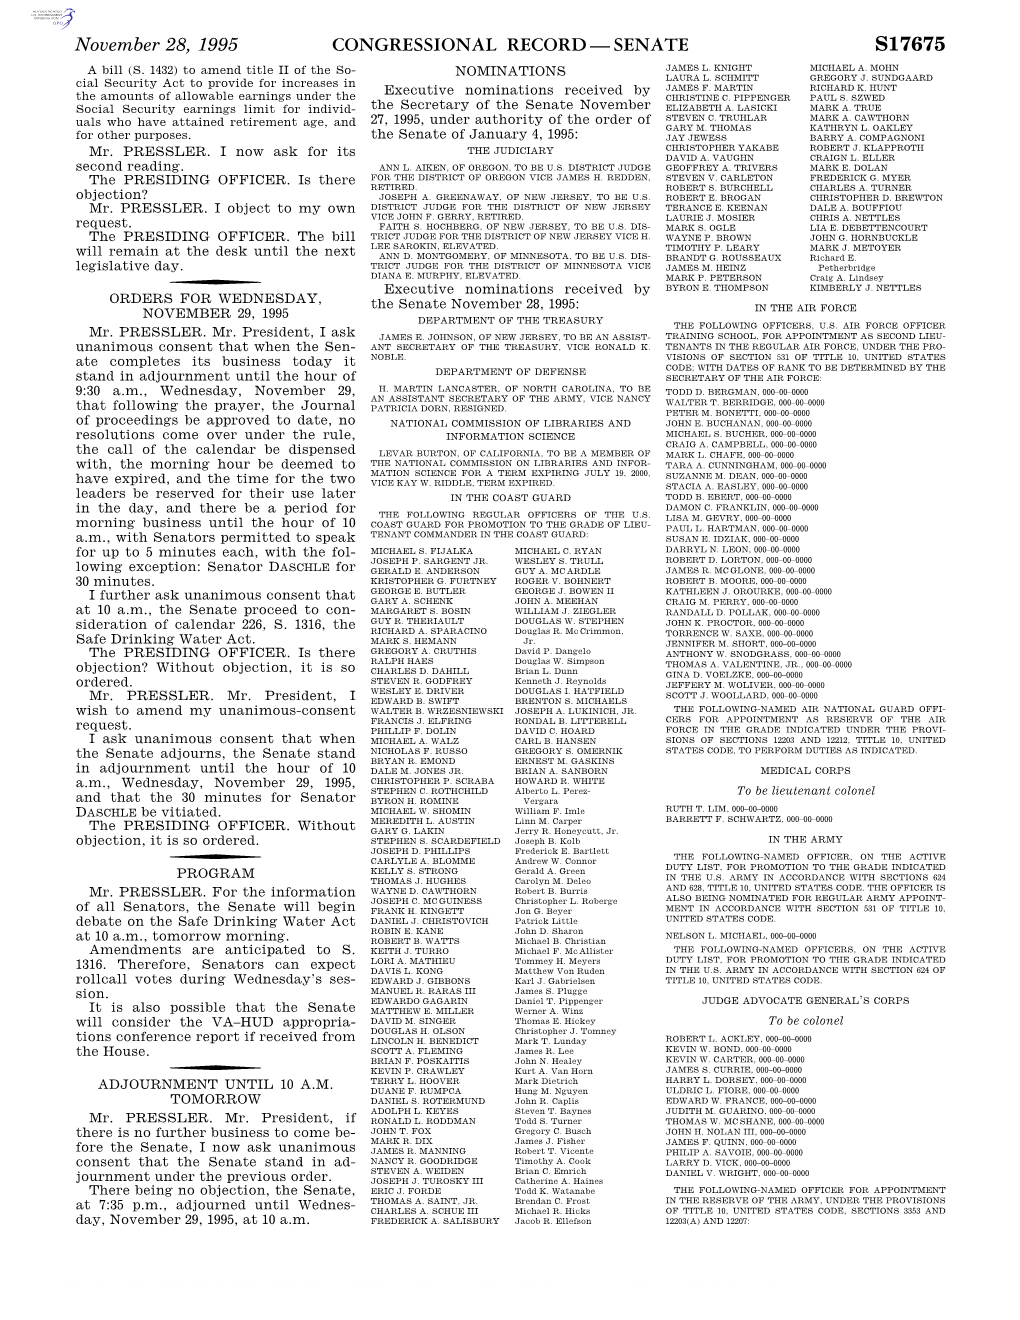 Congressional Record—Senate S17675